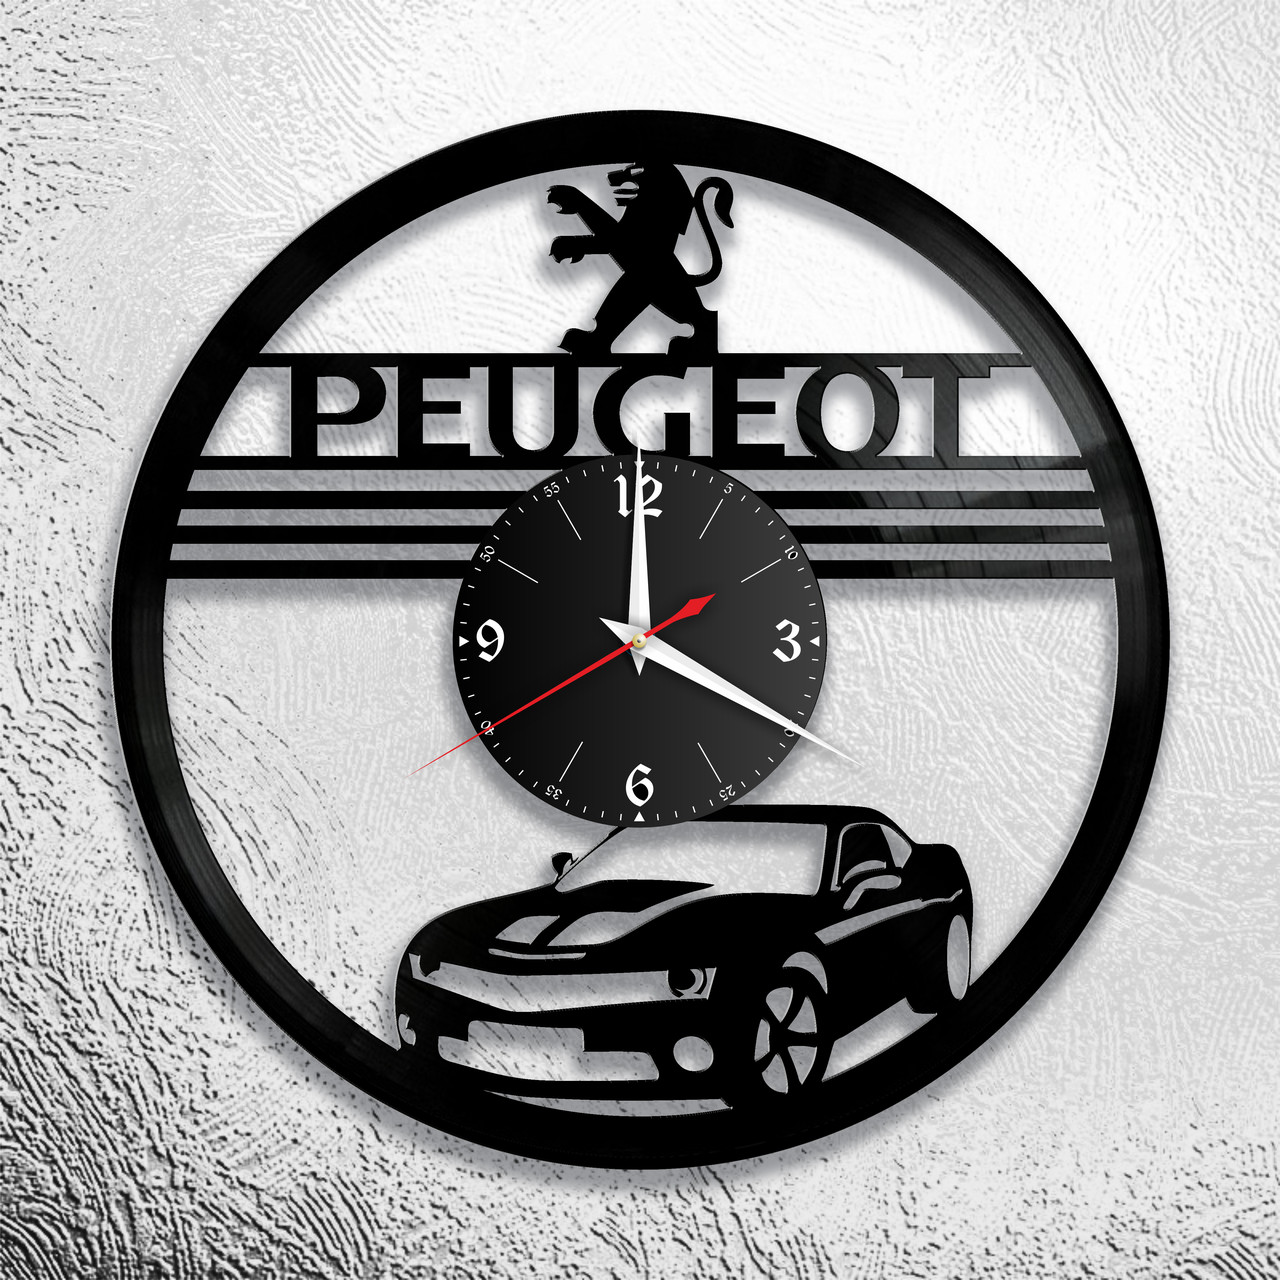 Часы из виниловой пластинки  "Peugeot" версия 1